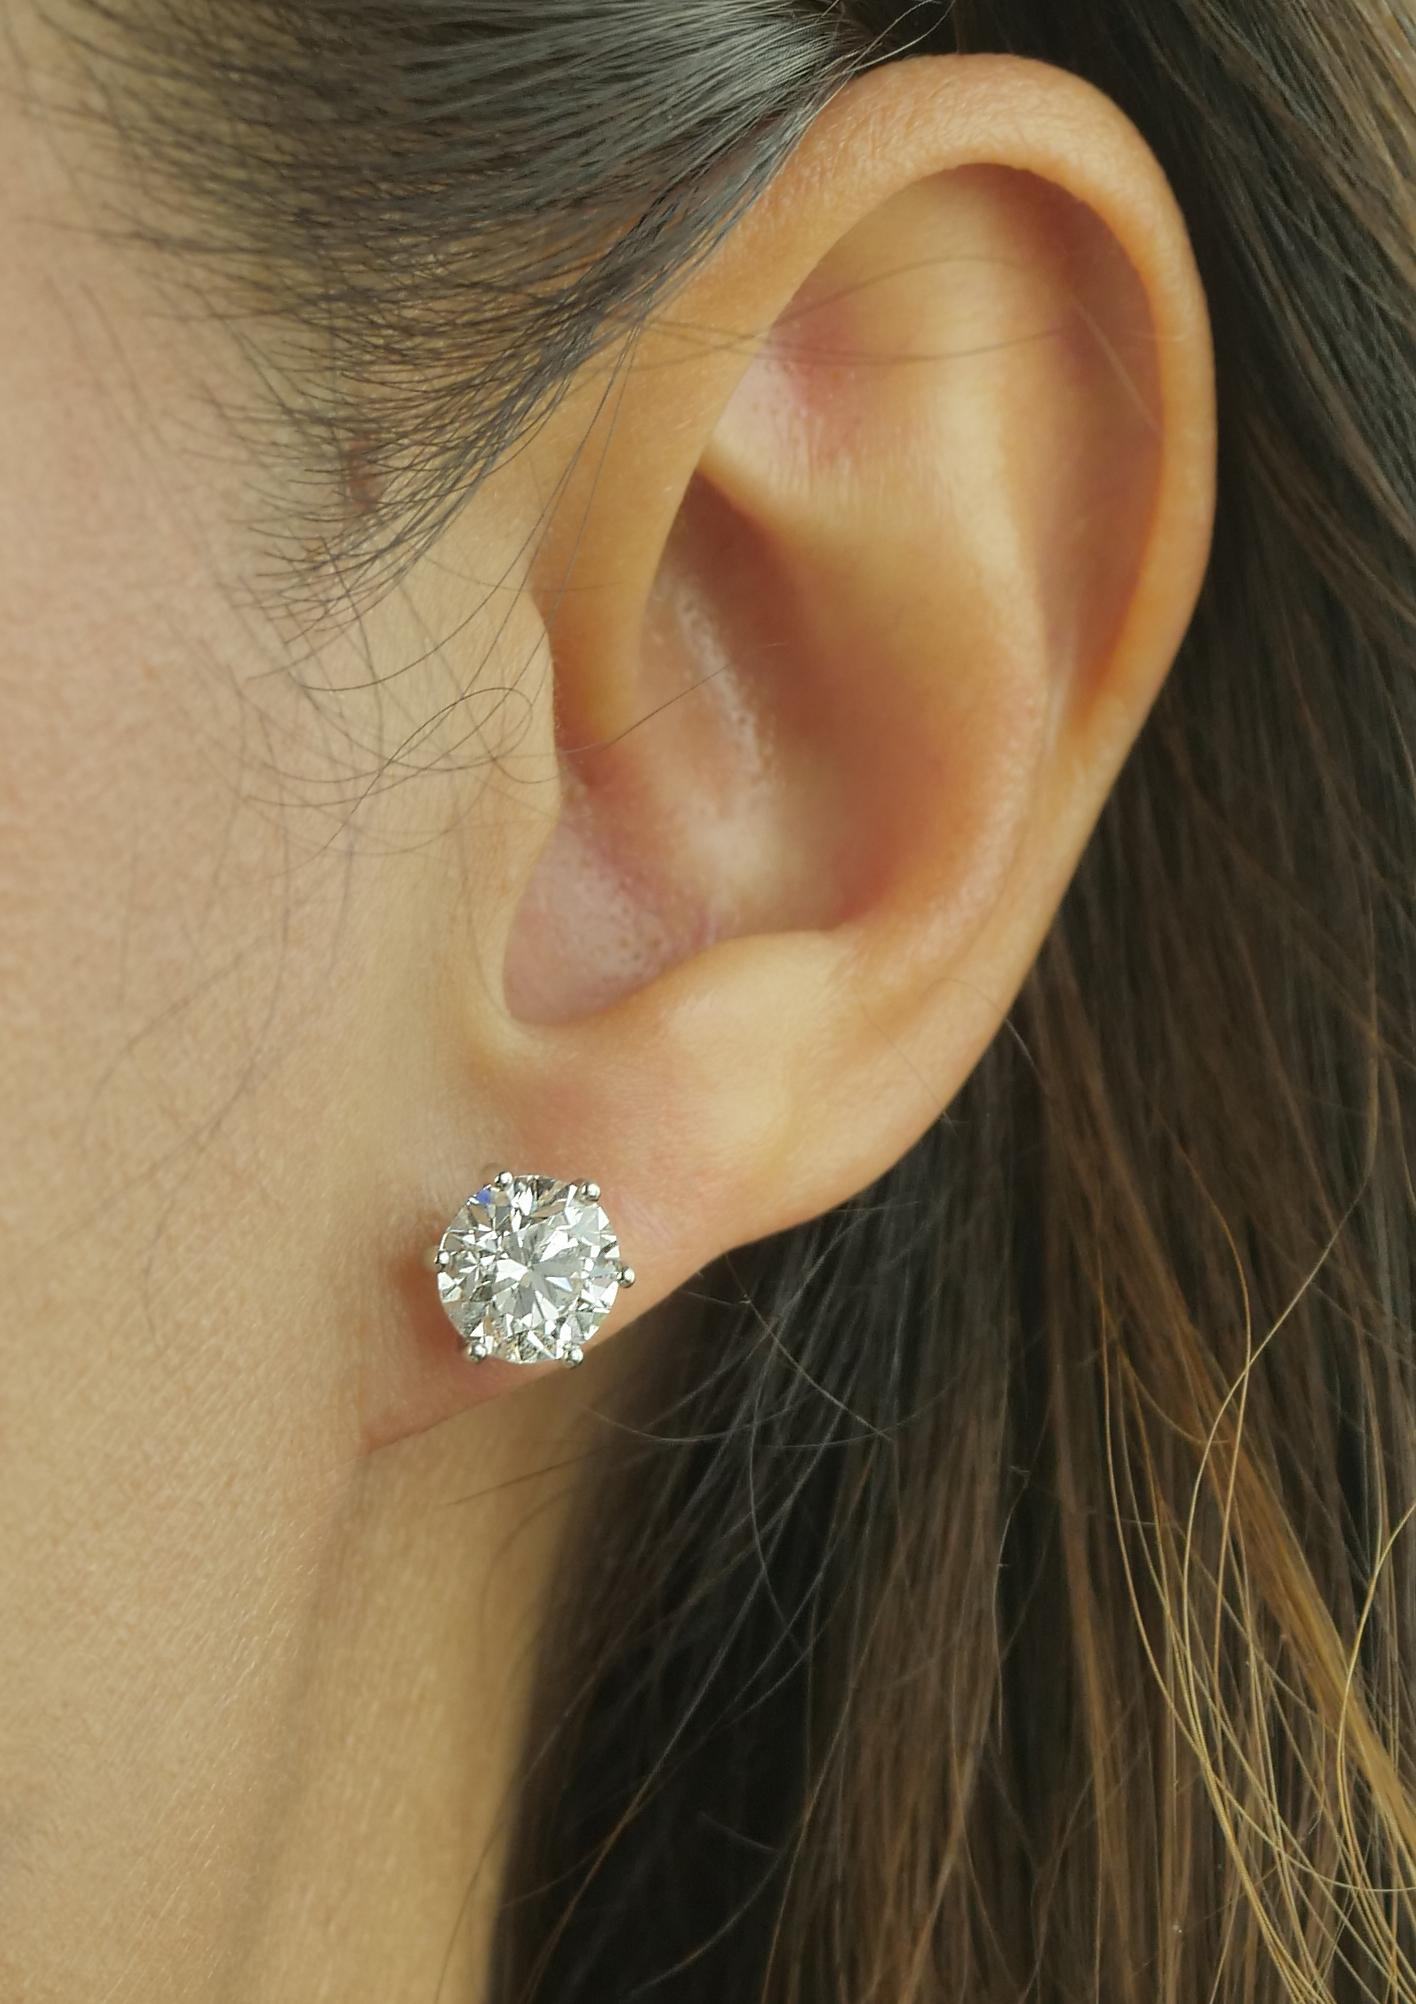 GIA-zertifizierte Solitär-Diamant-Ohrstecker mit 2 GIA-bewerteten runden Diamanten im Brillantschliff von je 2,03 und 2,01 Karat, die in Platin gefasst und speziell handgefertigt sind, um aufrecht auf jede Ohrgröße zu passen. Anstecknadel mit